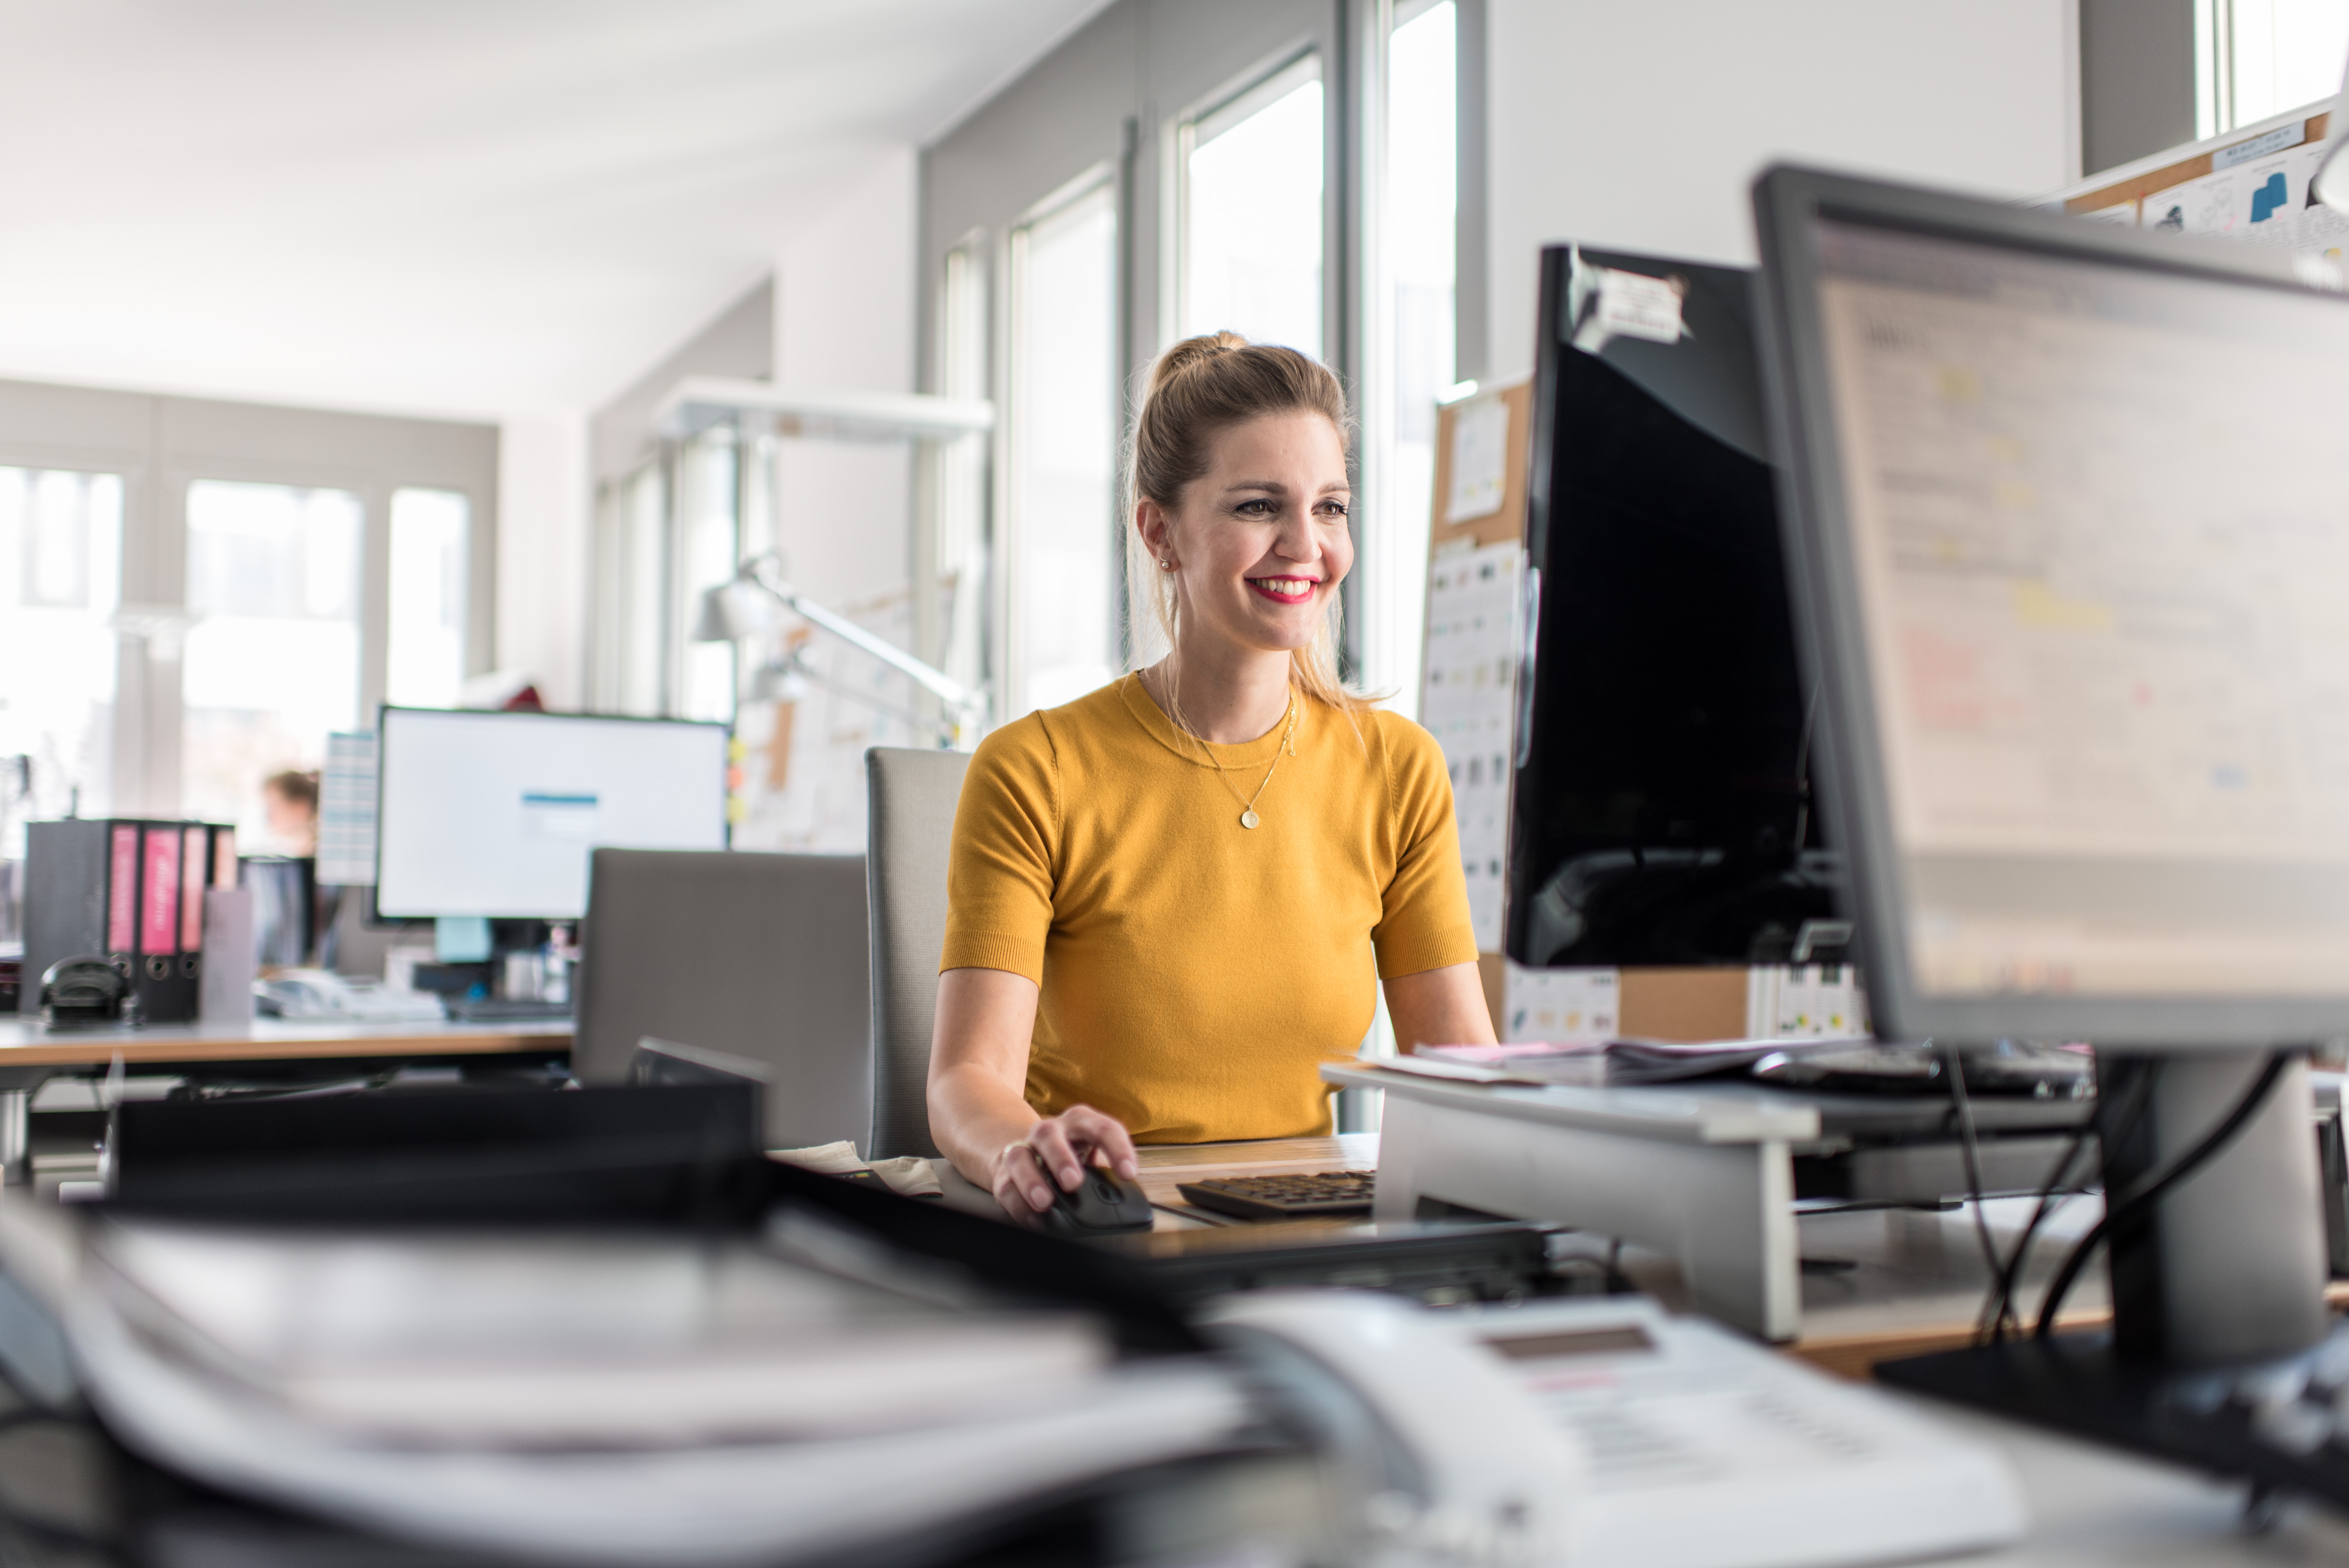 Eine Frau im gelben Shirt sitzt lächelnd am Schreibtisch und arbeitet am Computer.